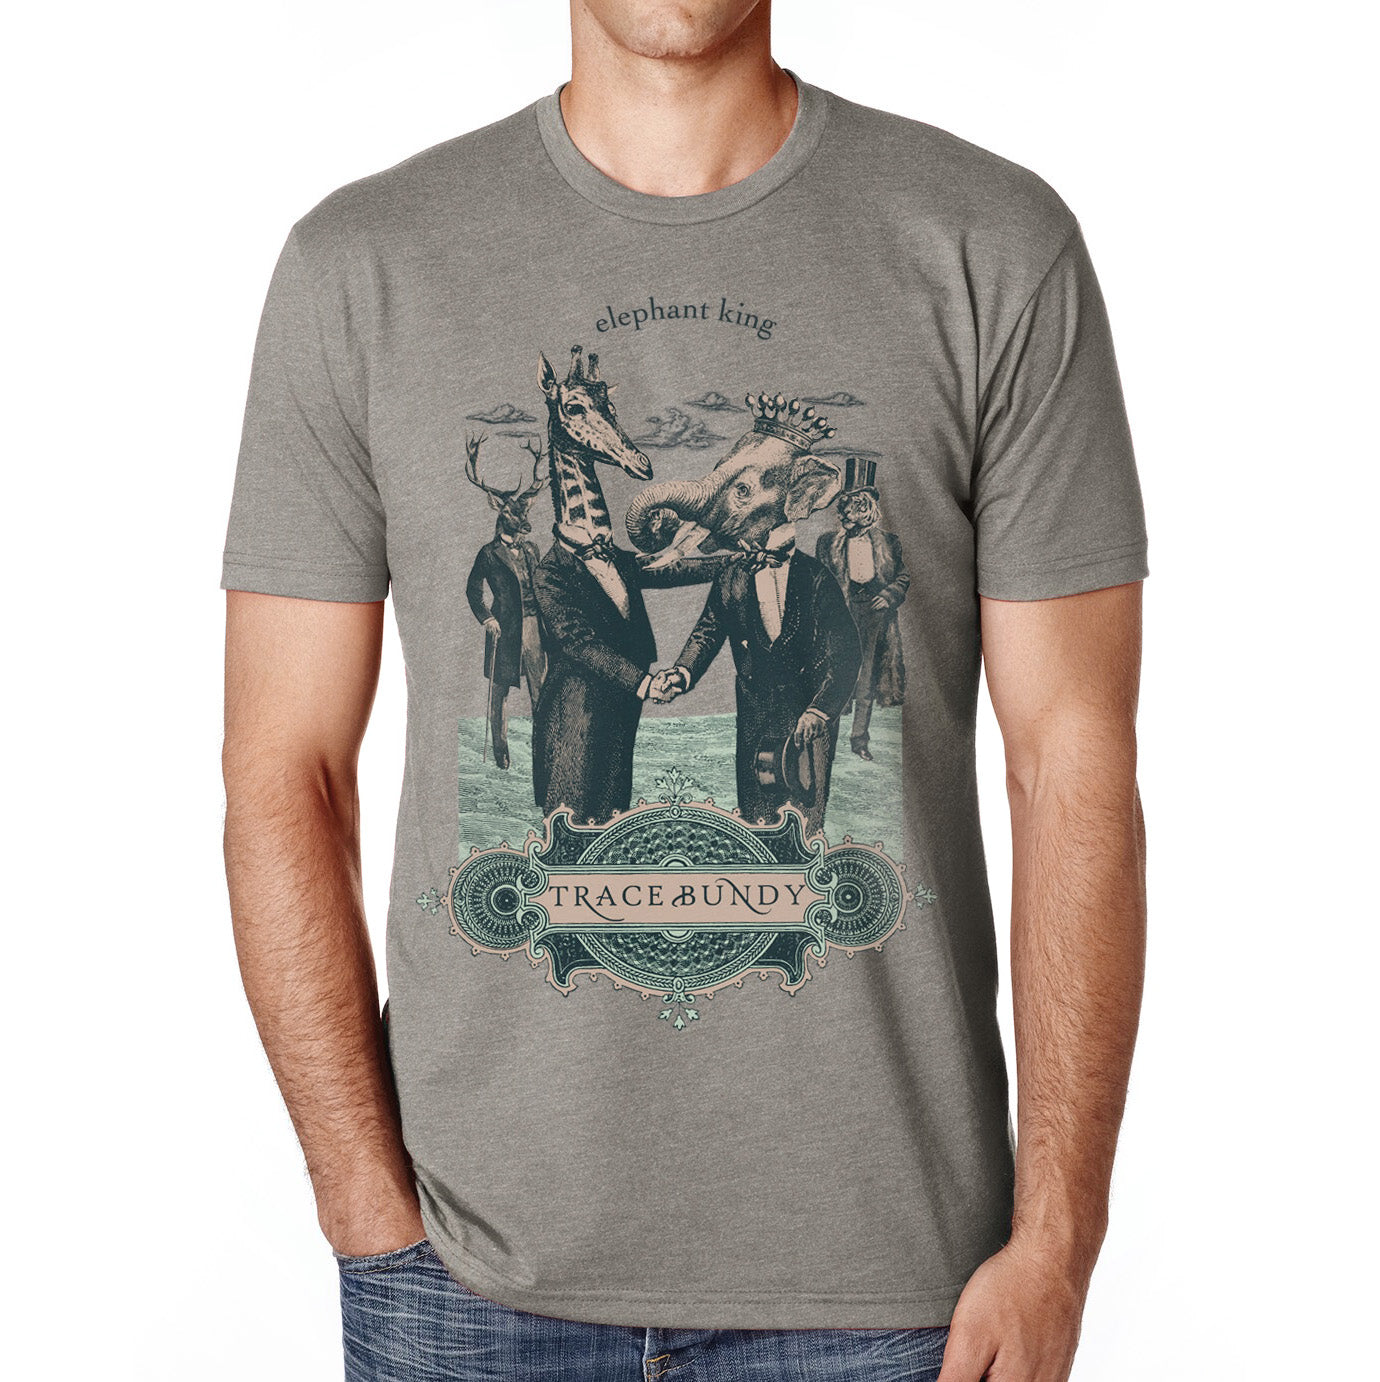 T-shirt: ELEPHANT KING - Unisex Shirt